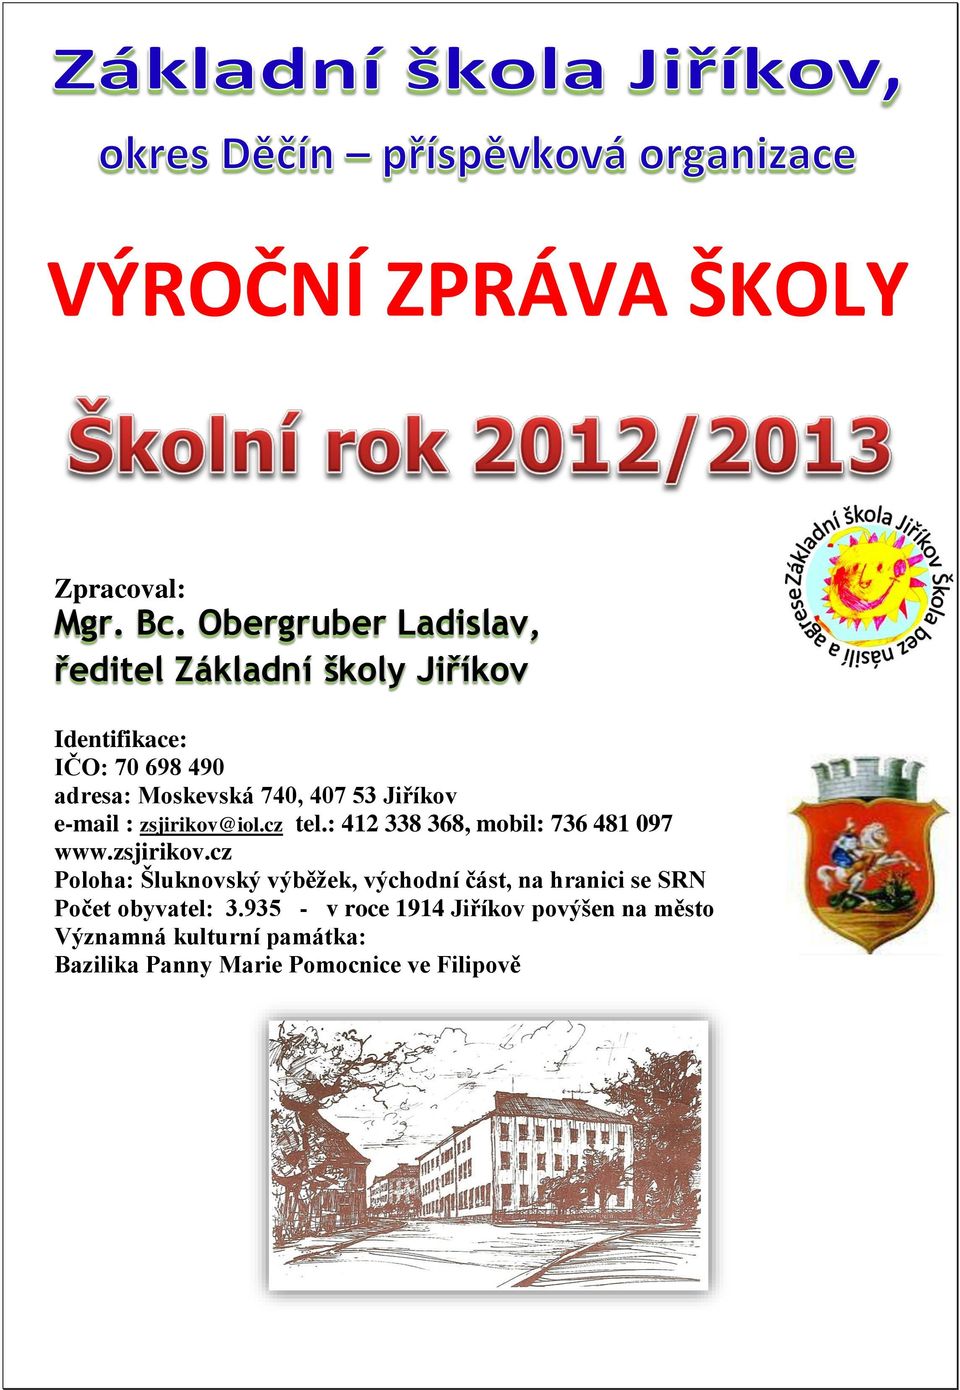 53 Jiříkov e-mail : zsjirikov@